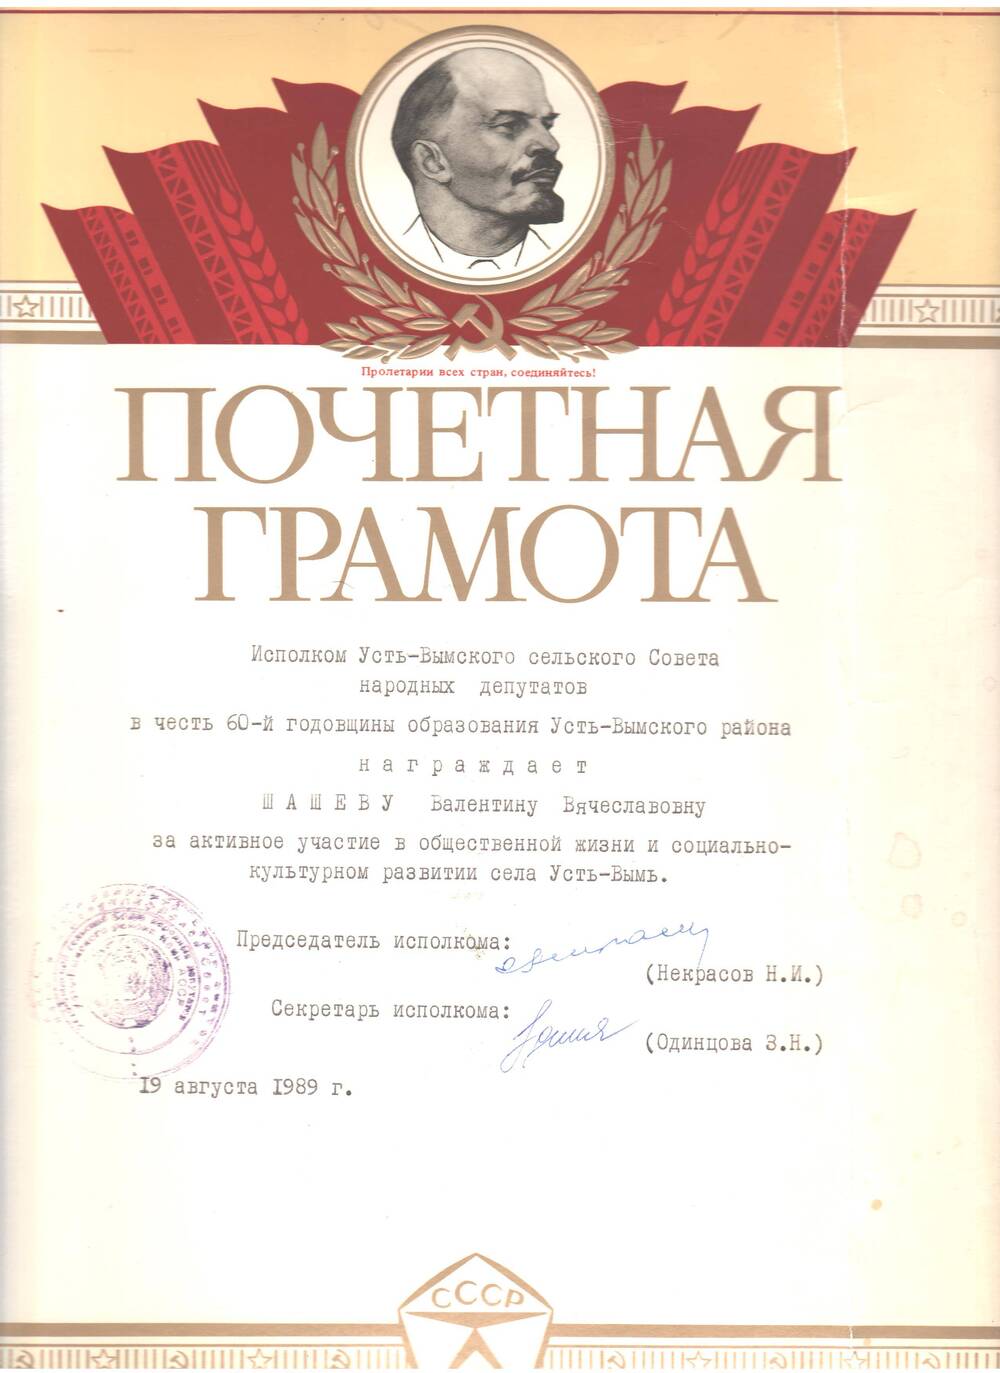 Грамота почетная в честь 60-й годовщины образования Усть-Вымского района